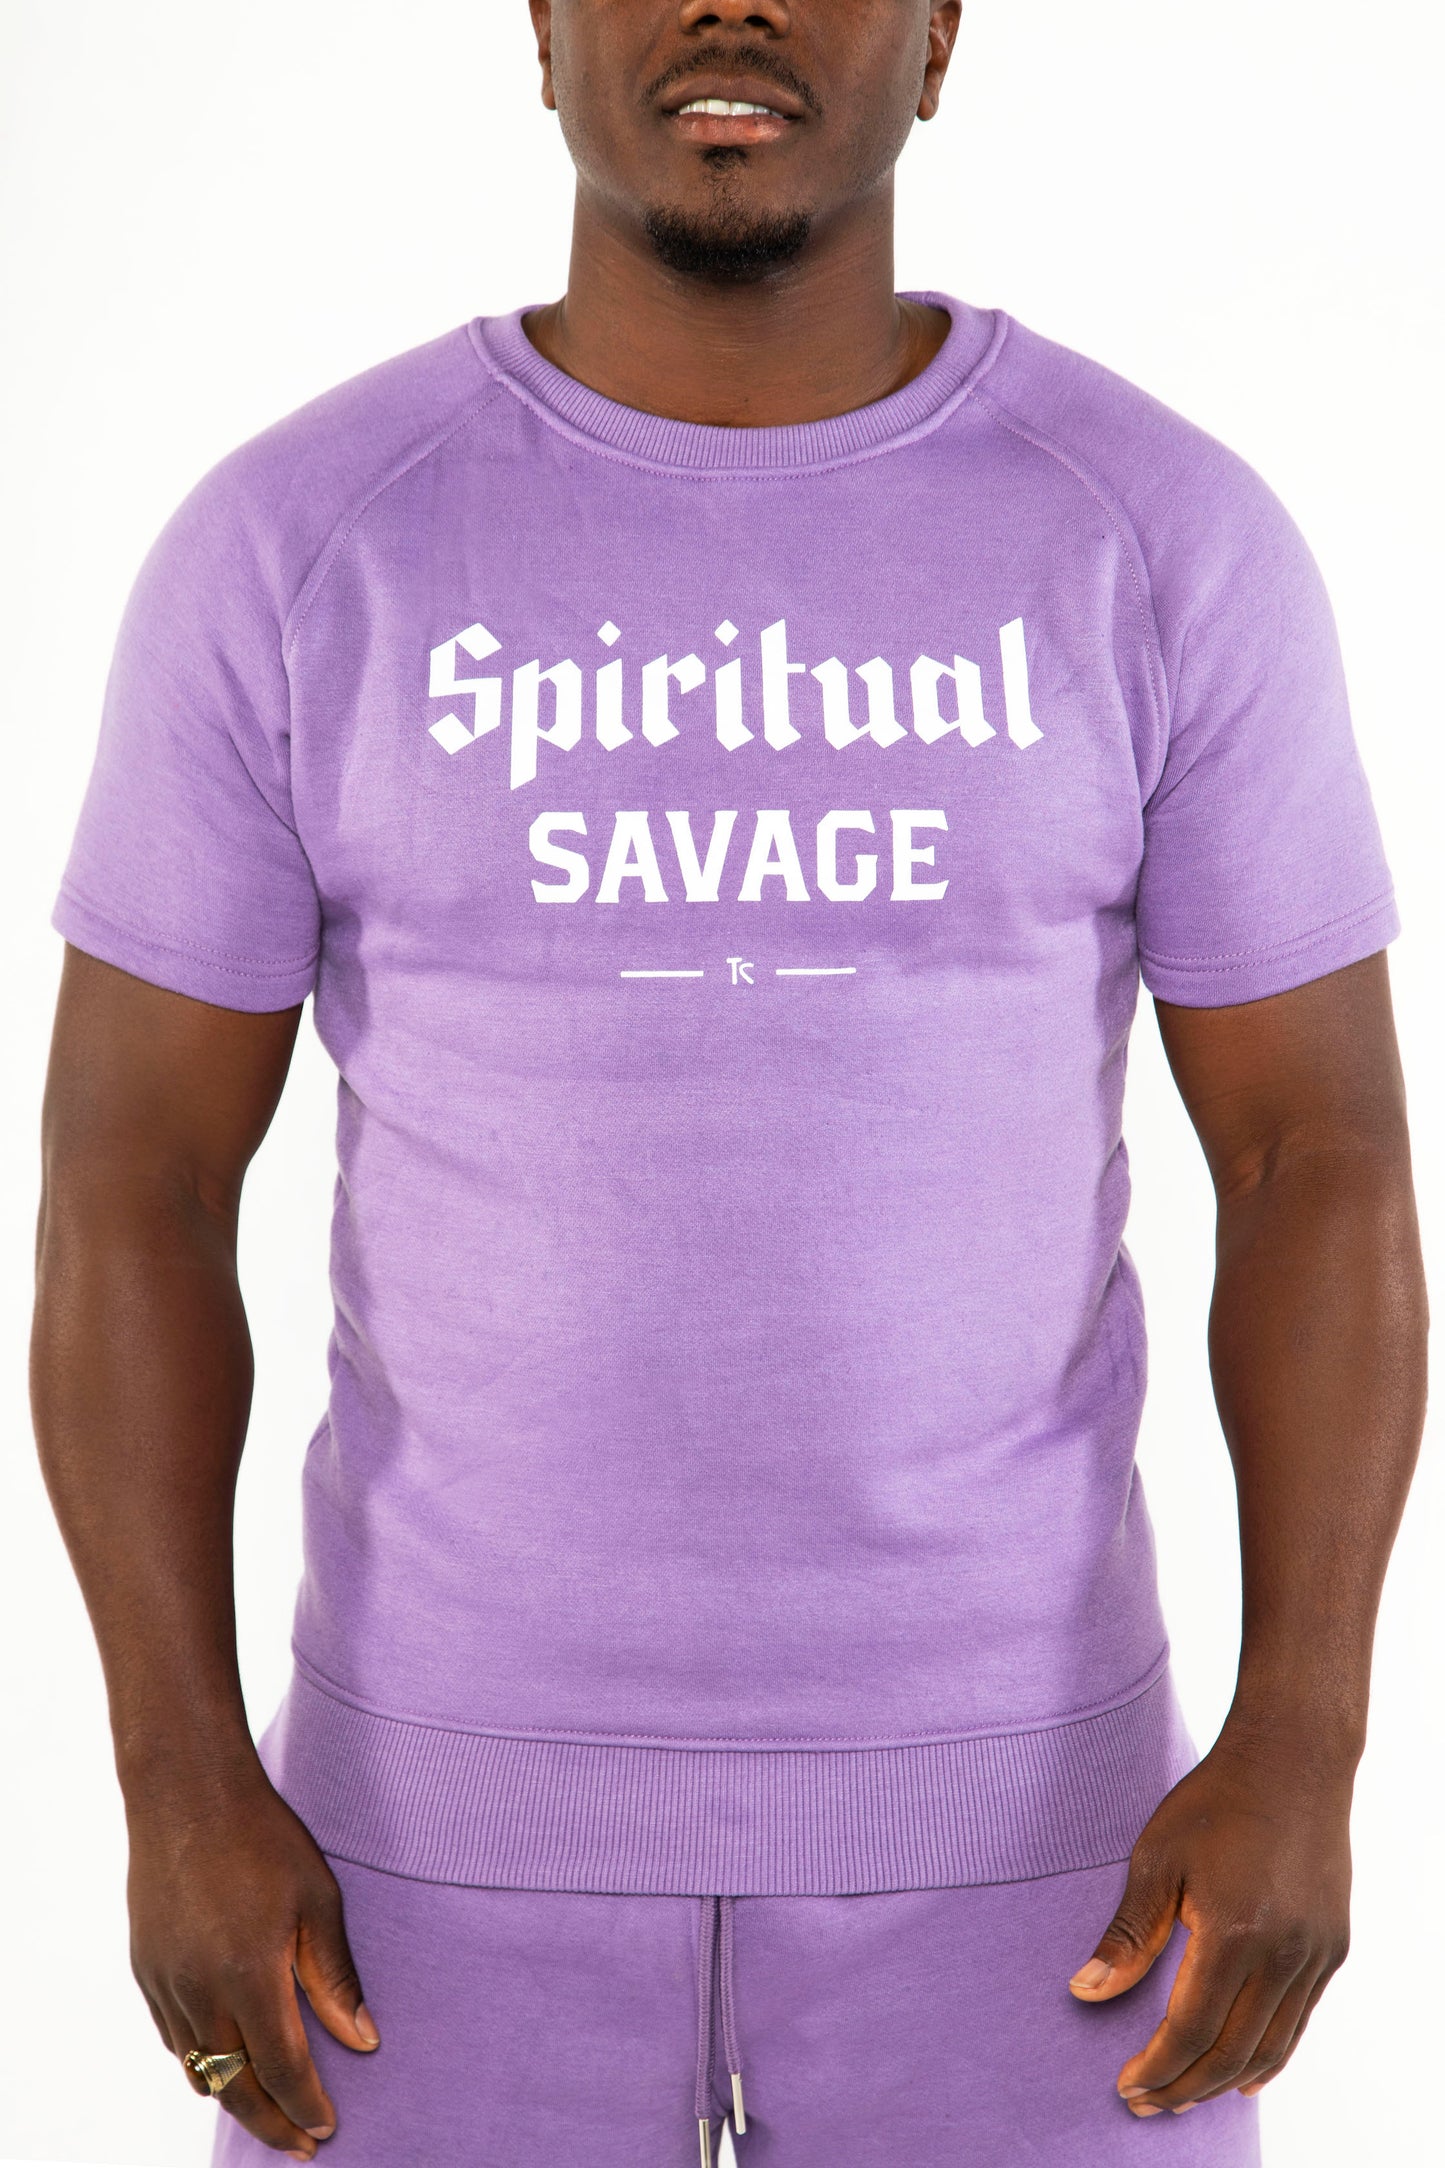 Spiritual Savage Short Sleeve Sweater Set